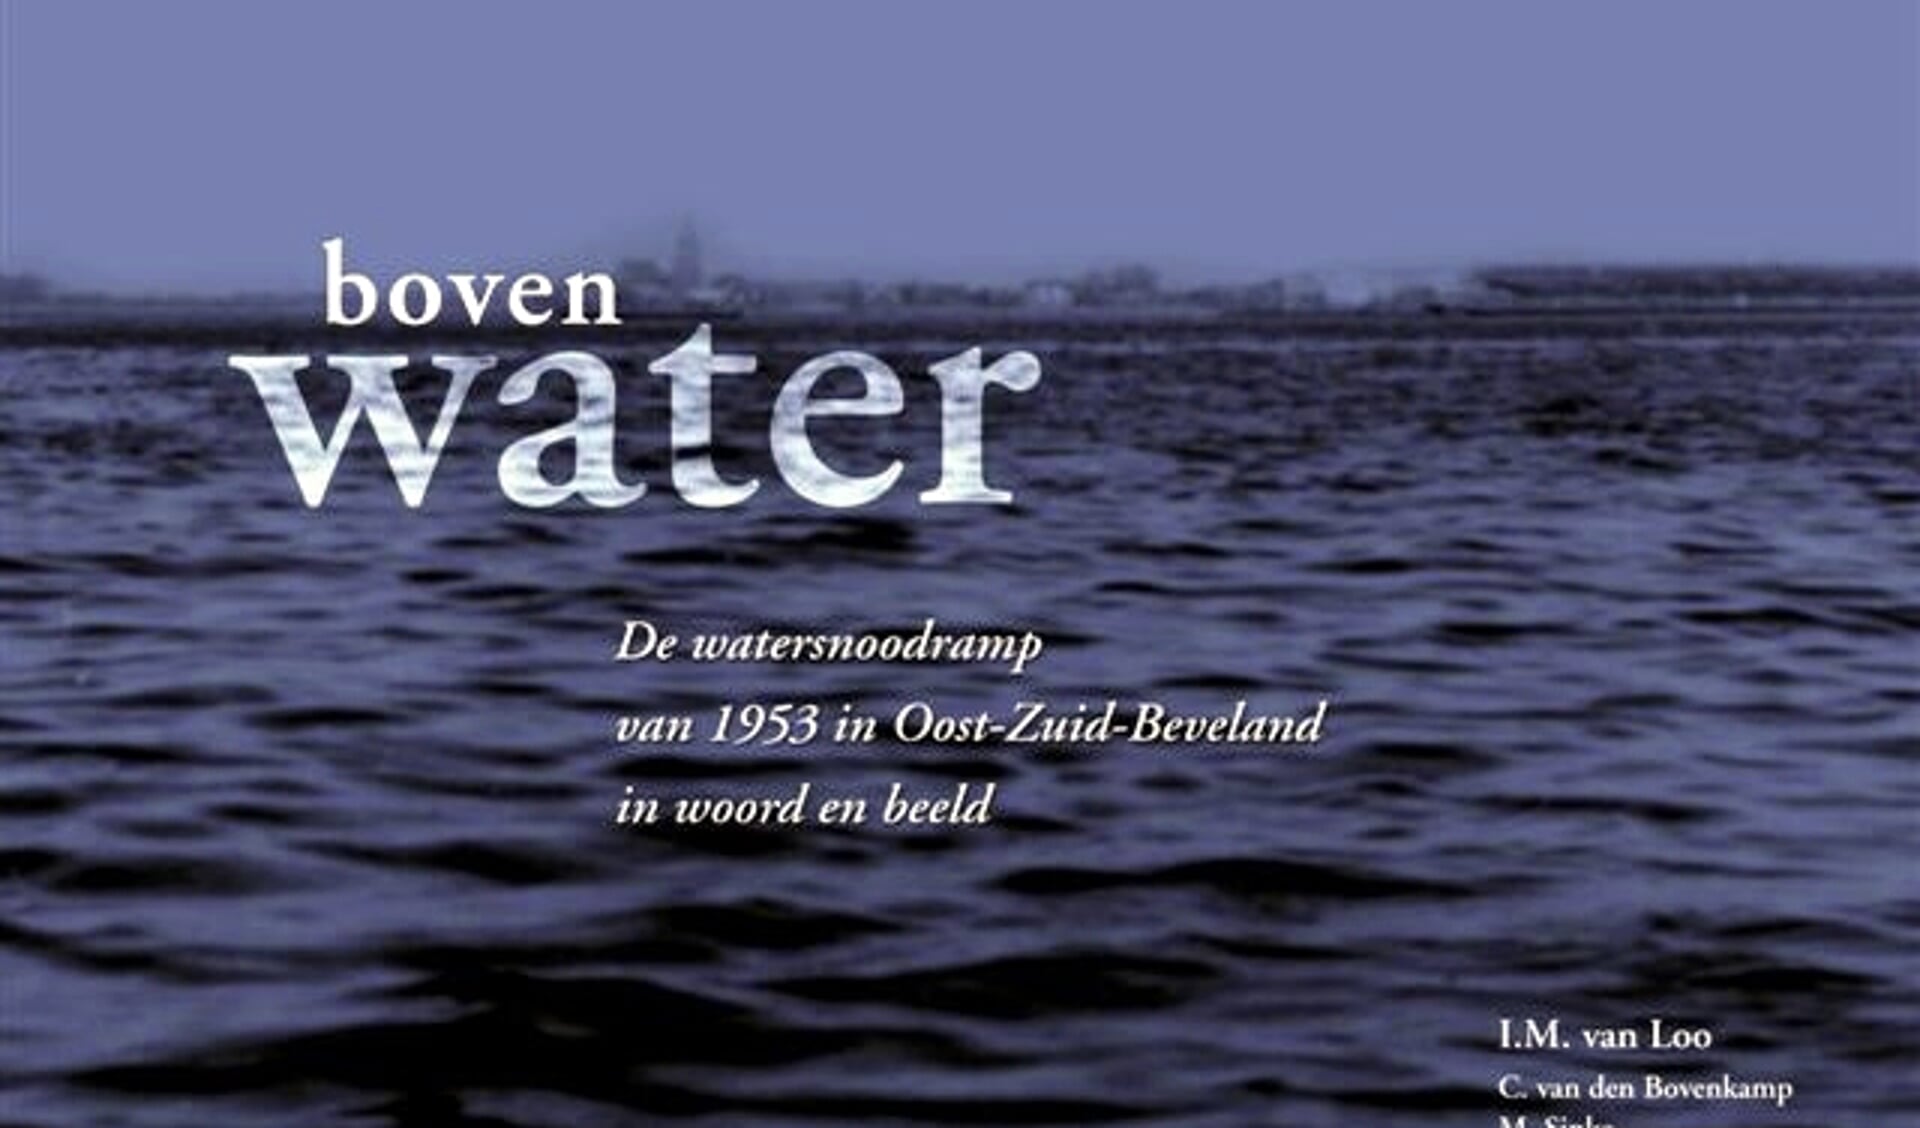 Boek 'Boven Water' De watersnoodramp van 1953 in Oost-Zuid-Beveland in woord en beeld